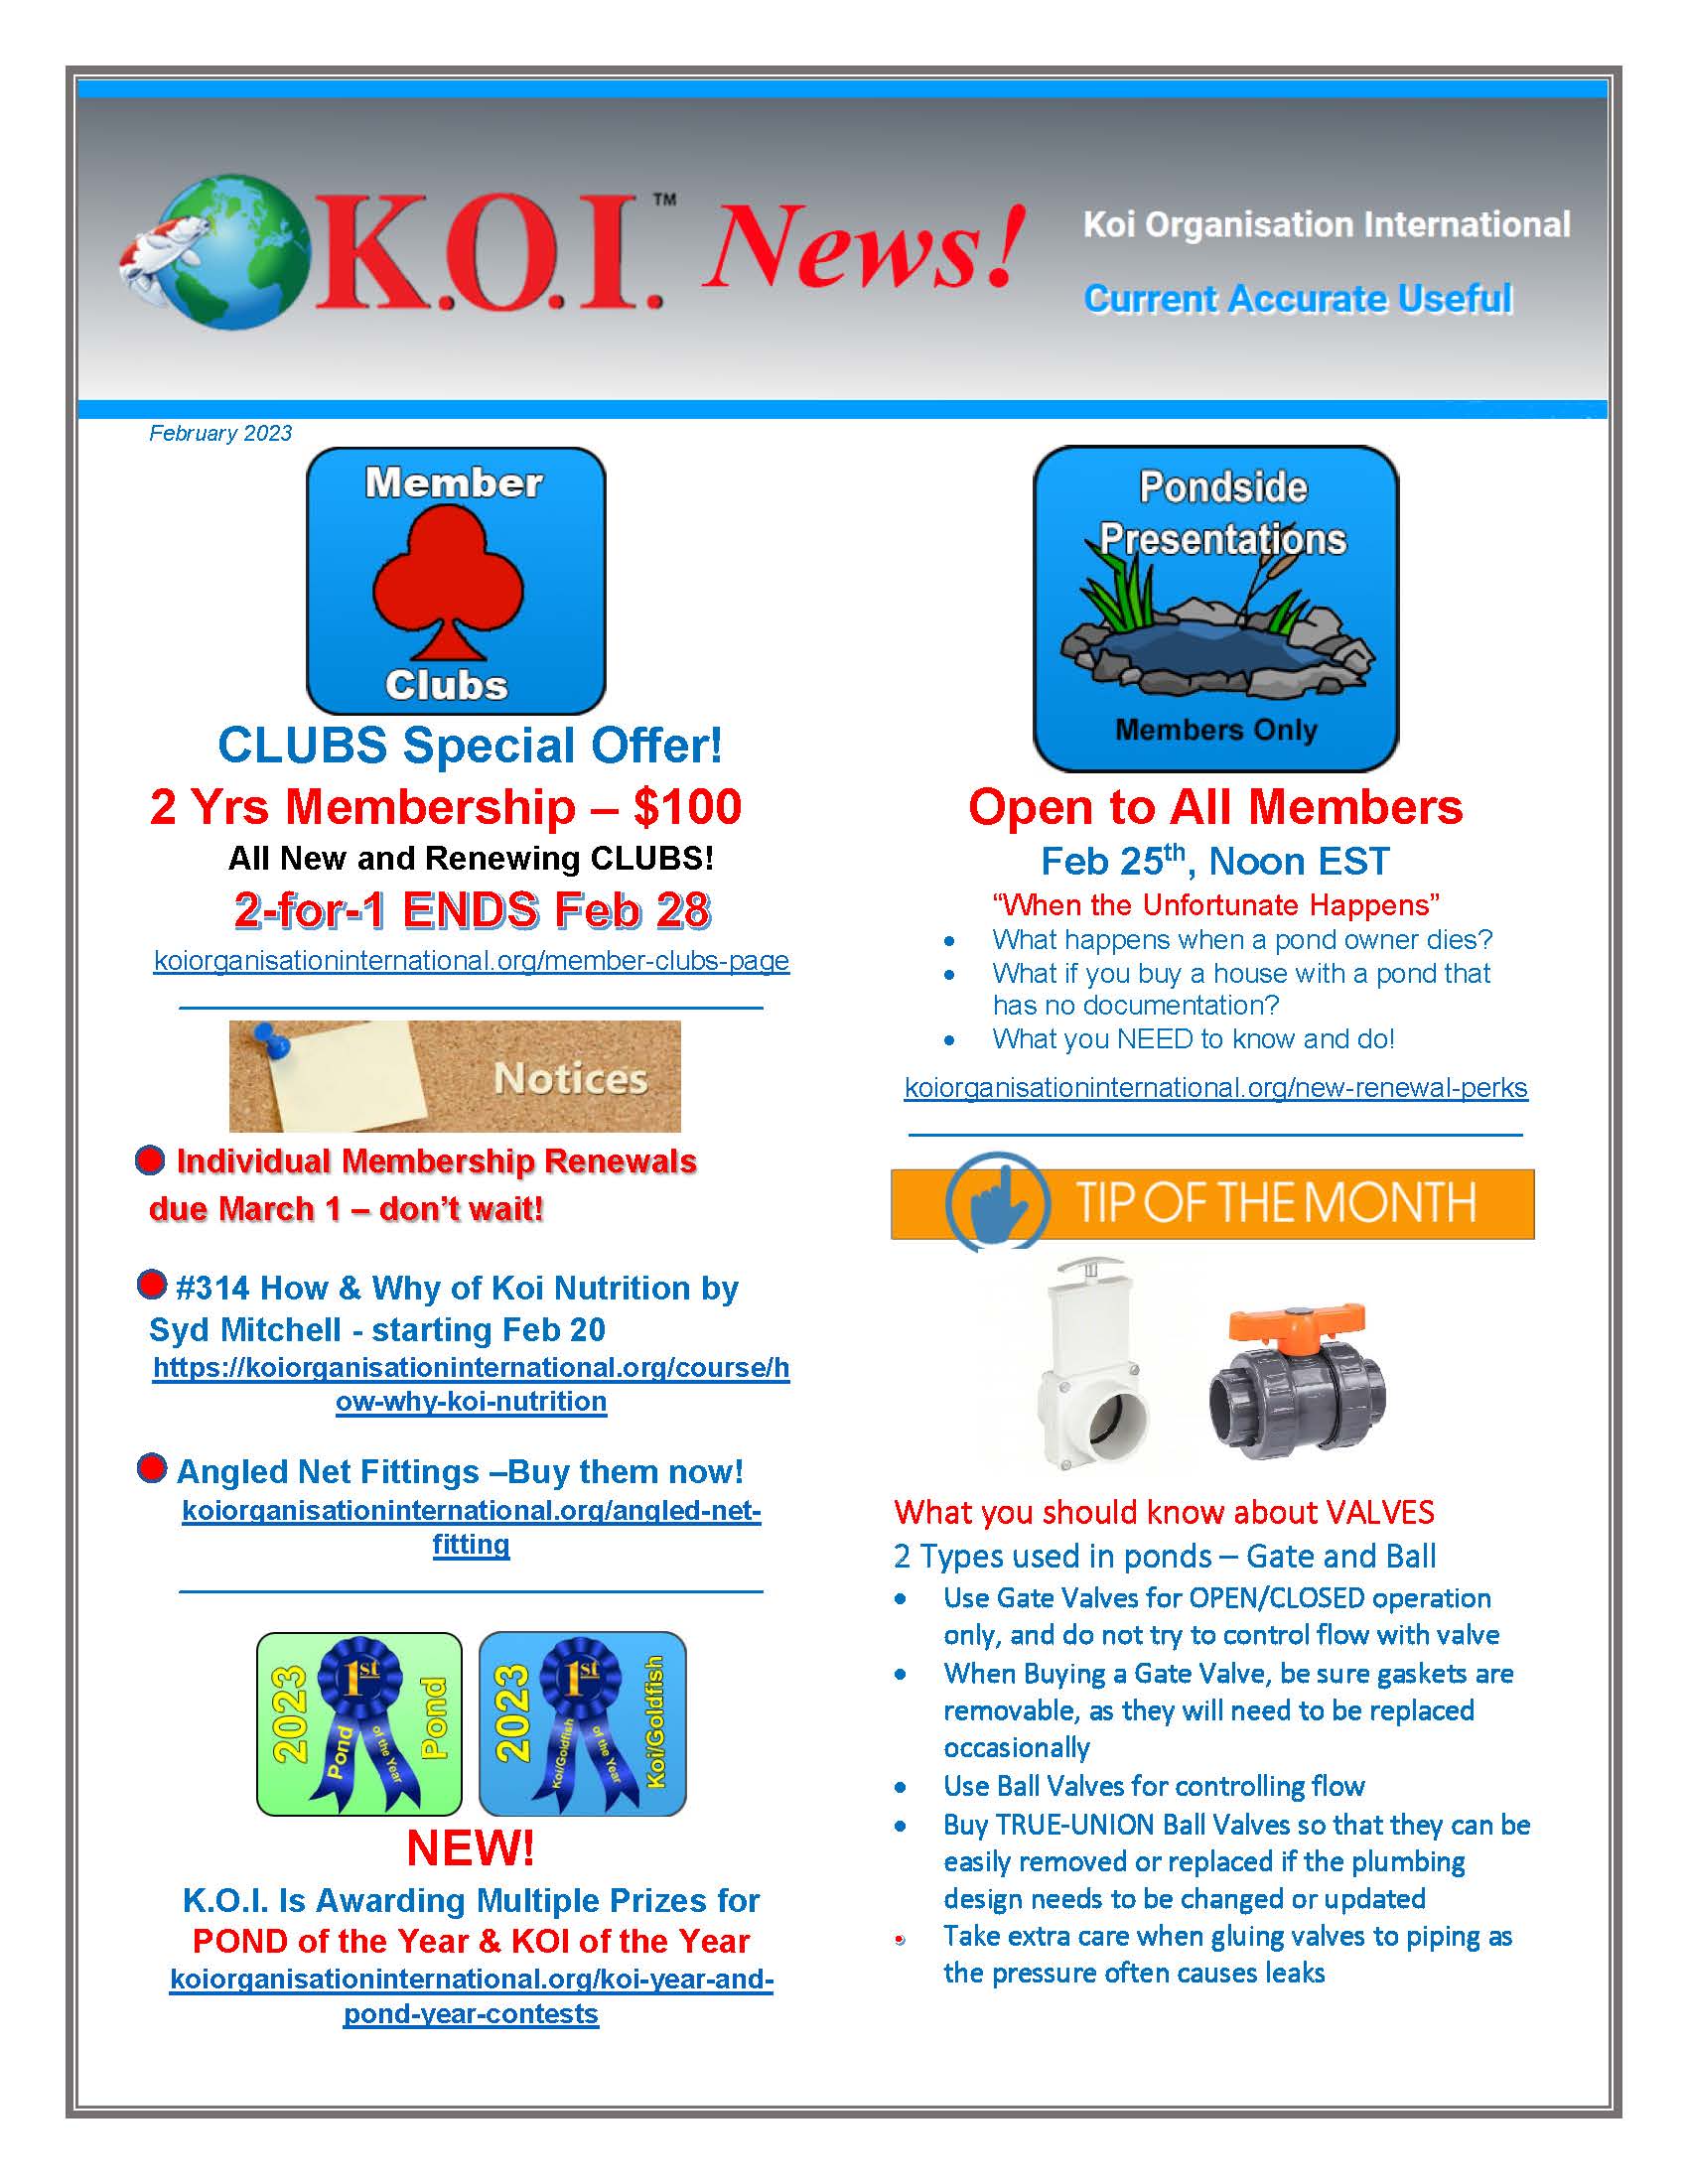 K.O.I. News February 2023